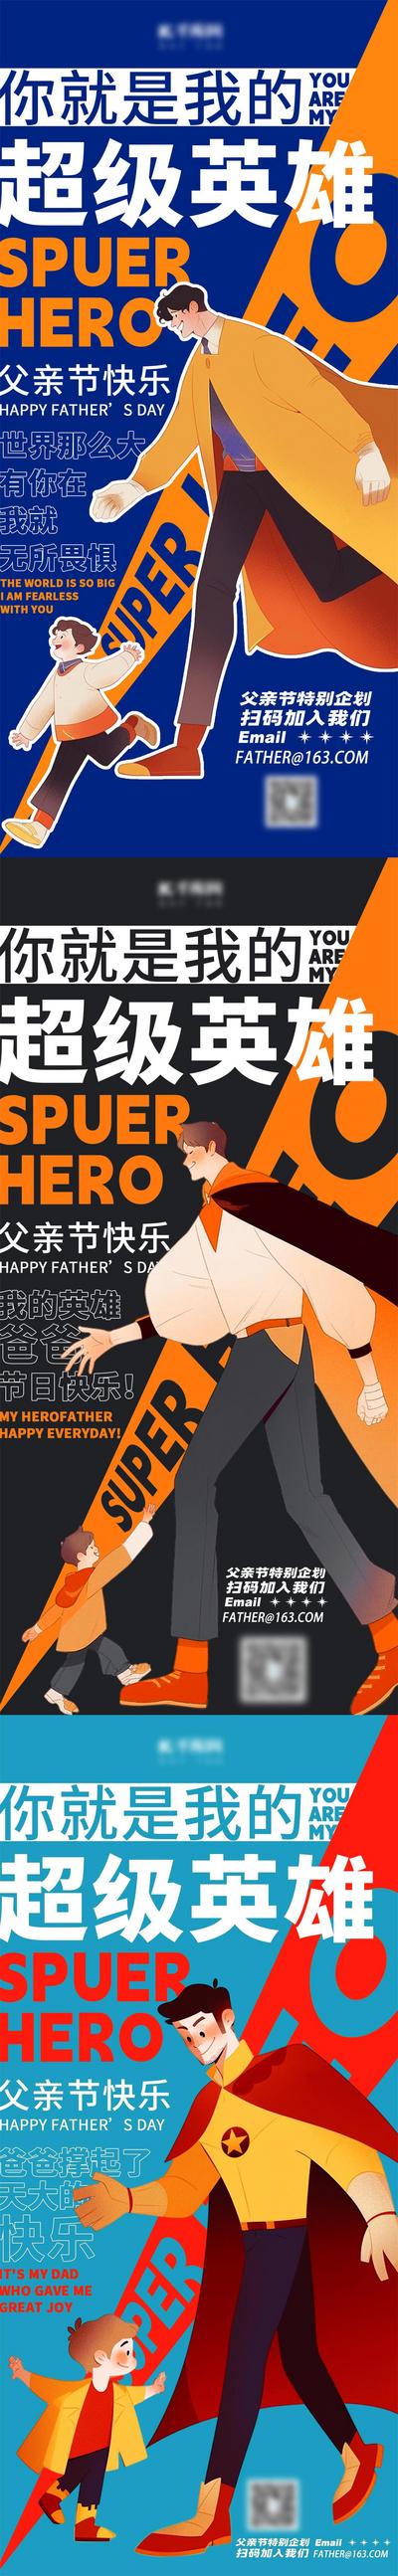 南门网 广告 海报 节日 超人 系列 公历节日 父亲节 超级英雄 漫画 系列